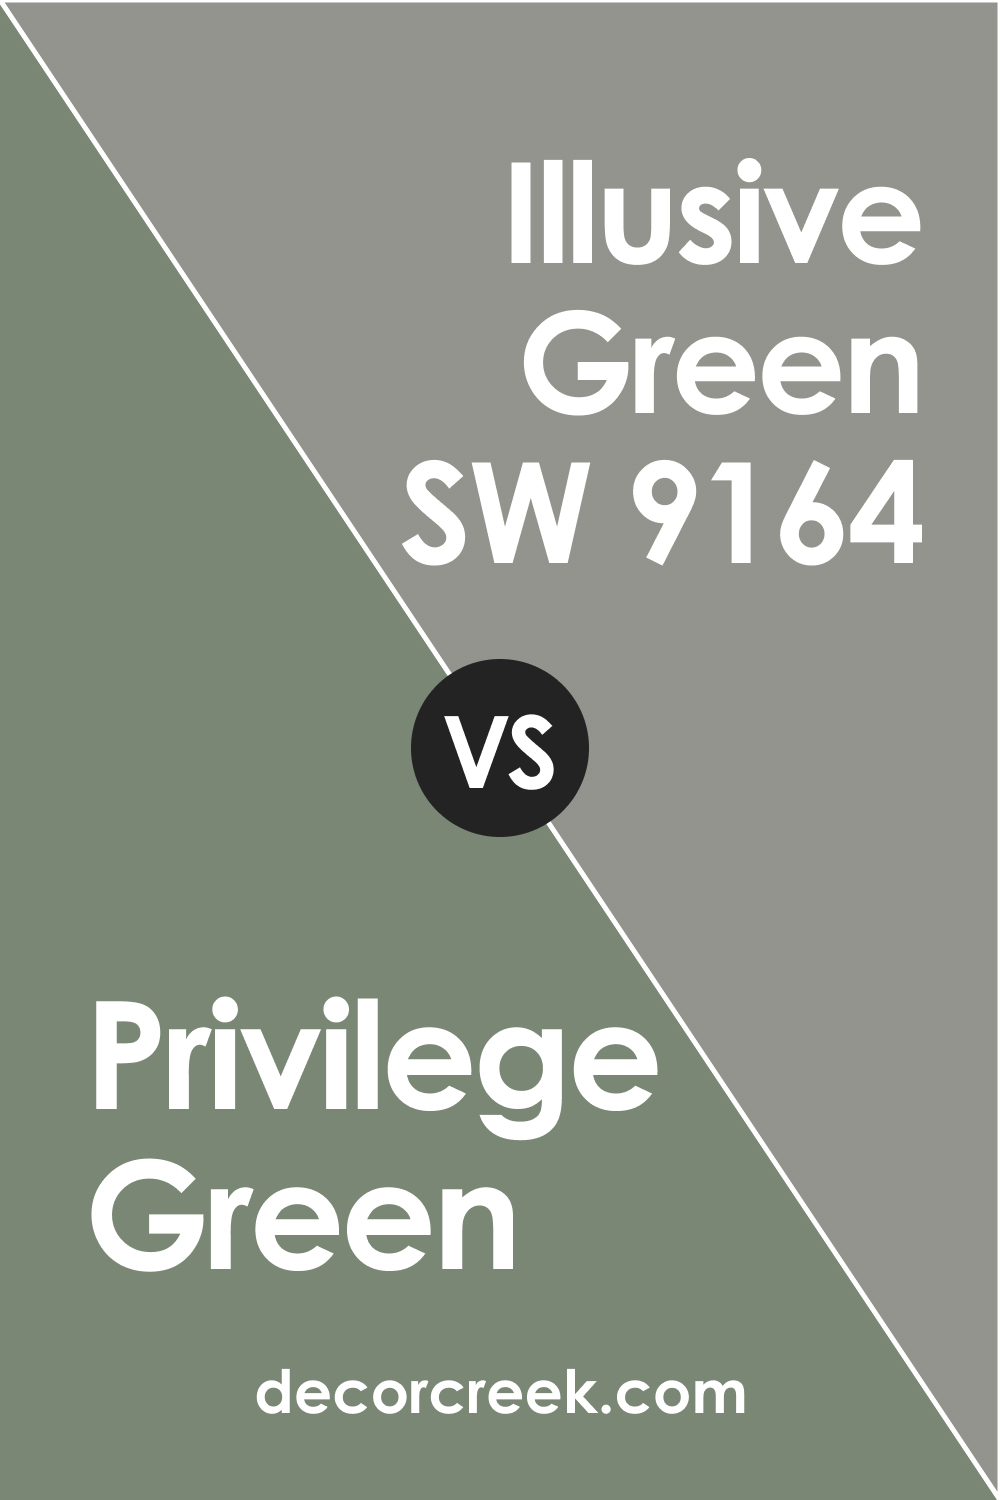 Privilege Green vs Illusive Green